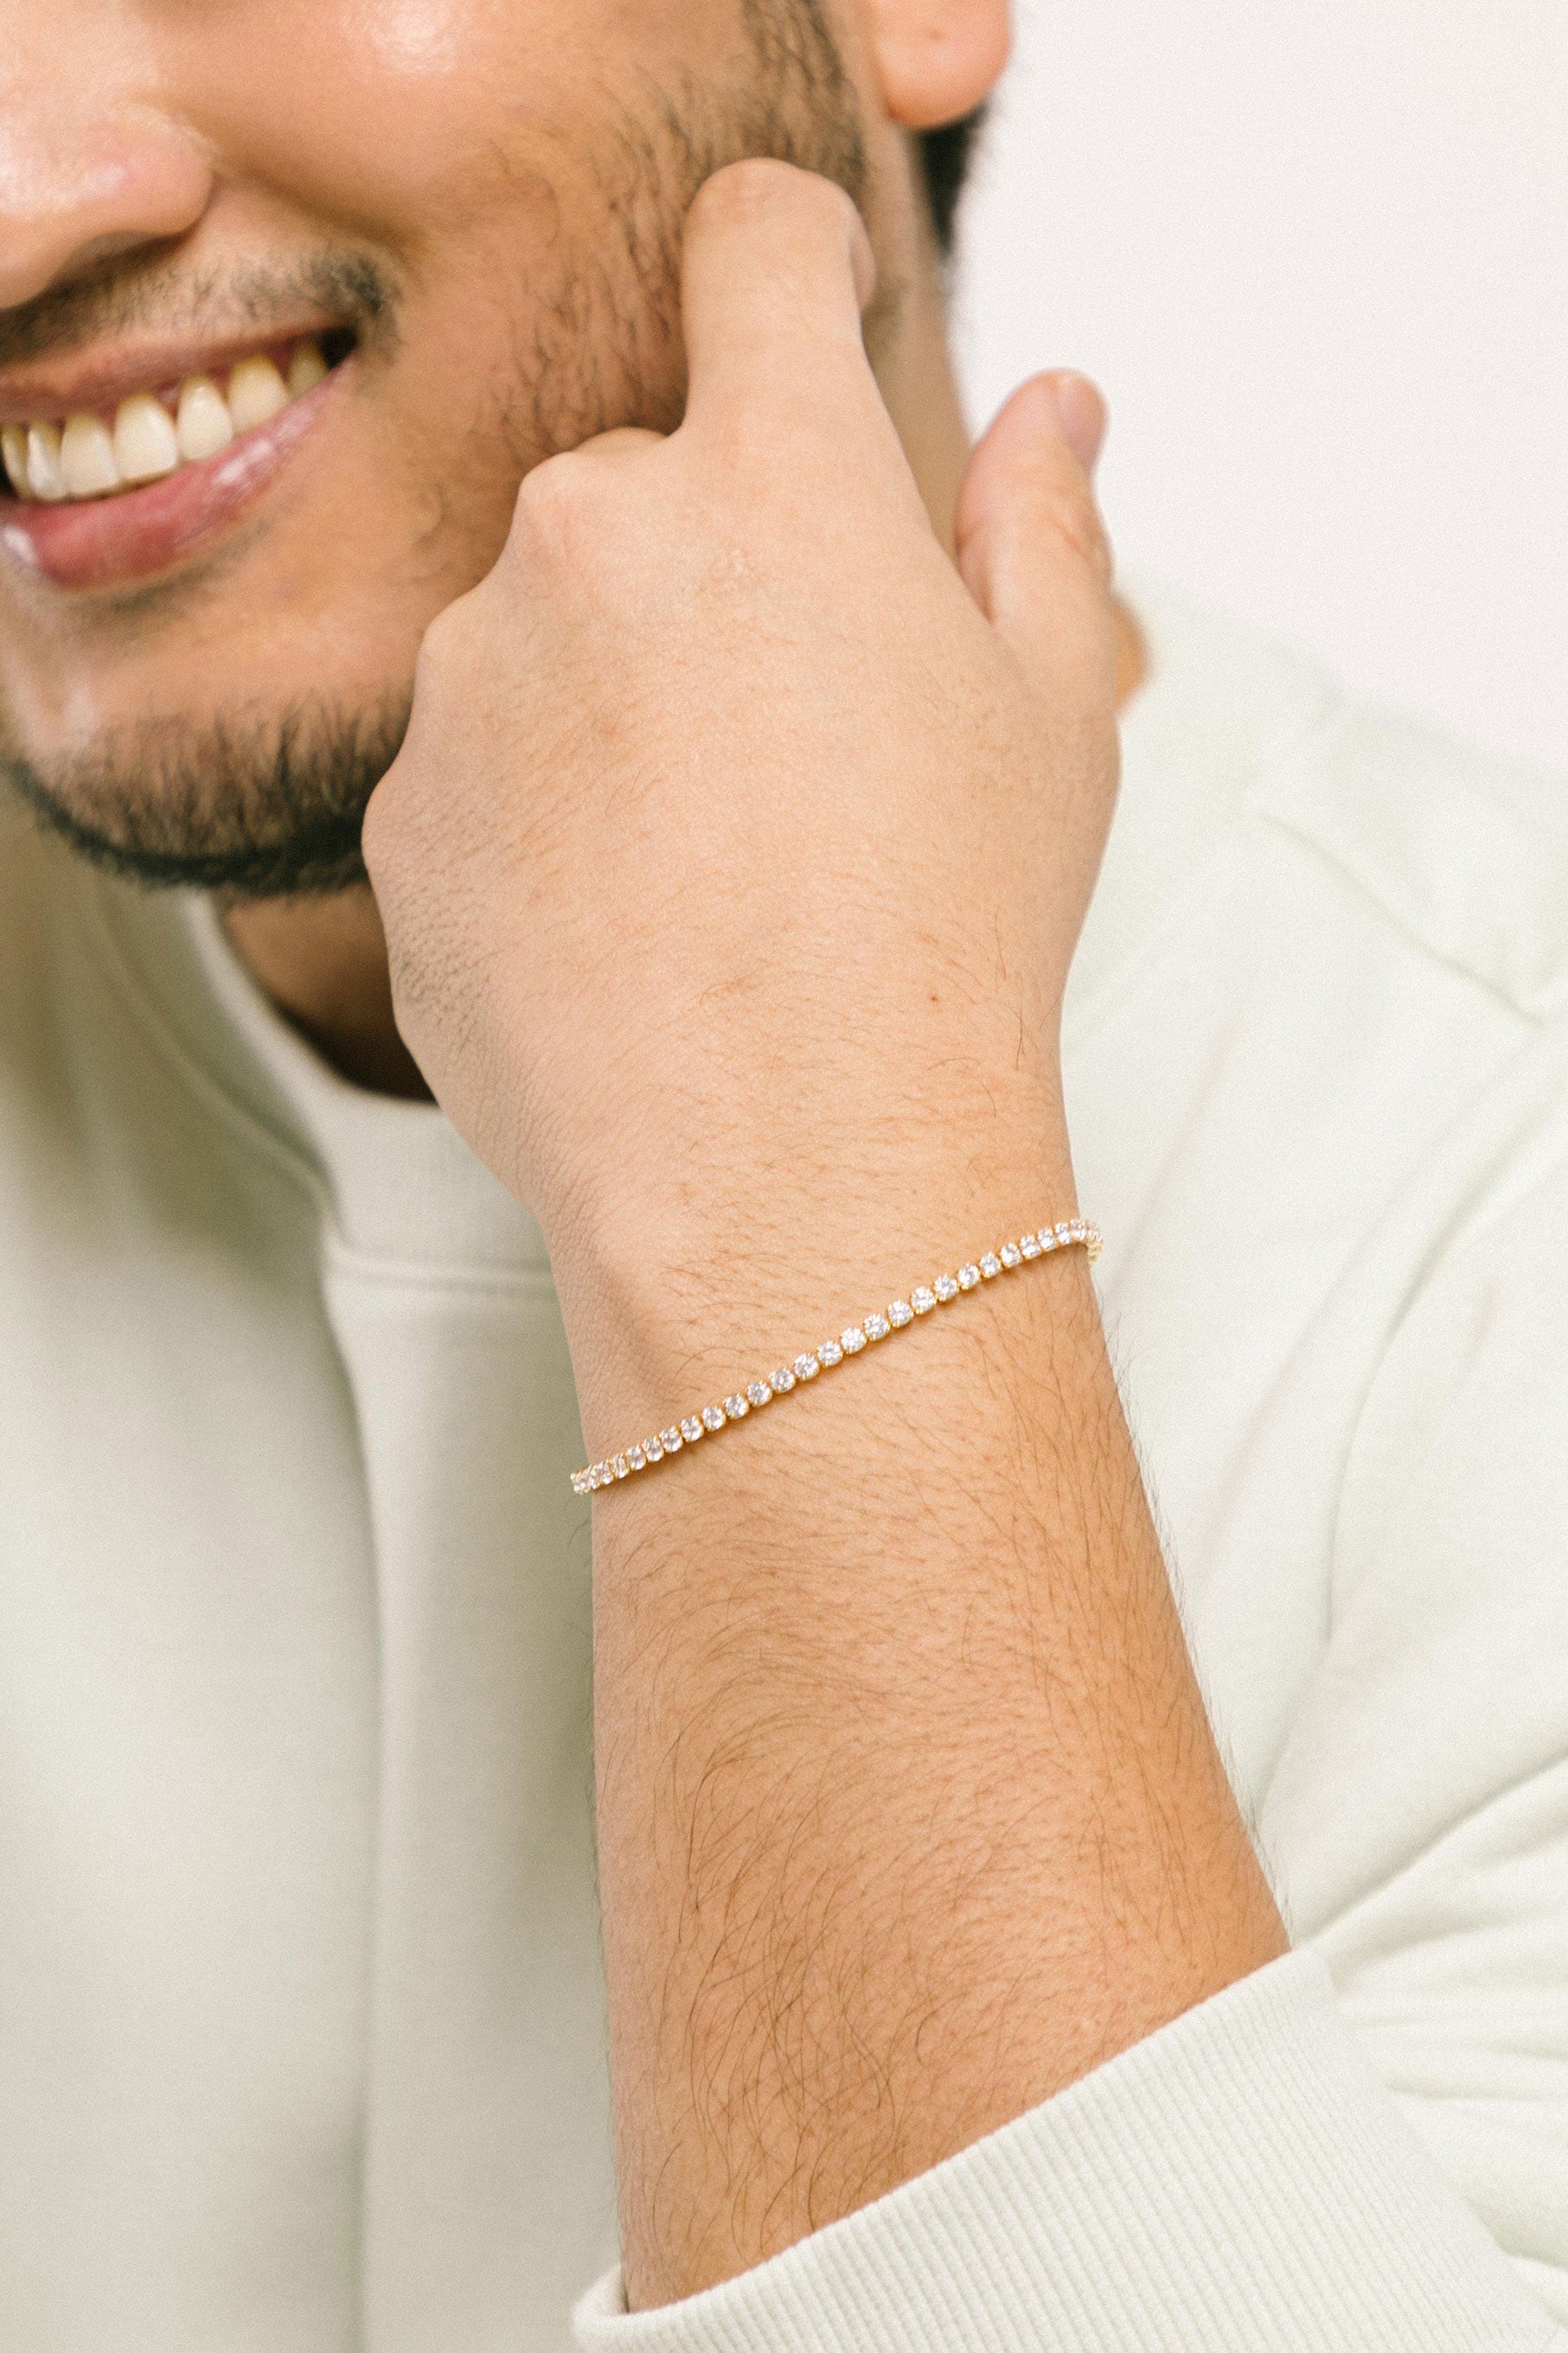 Aiori man wearing bracelet